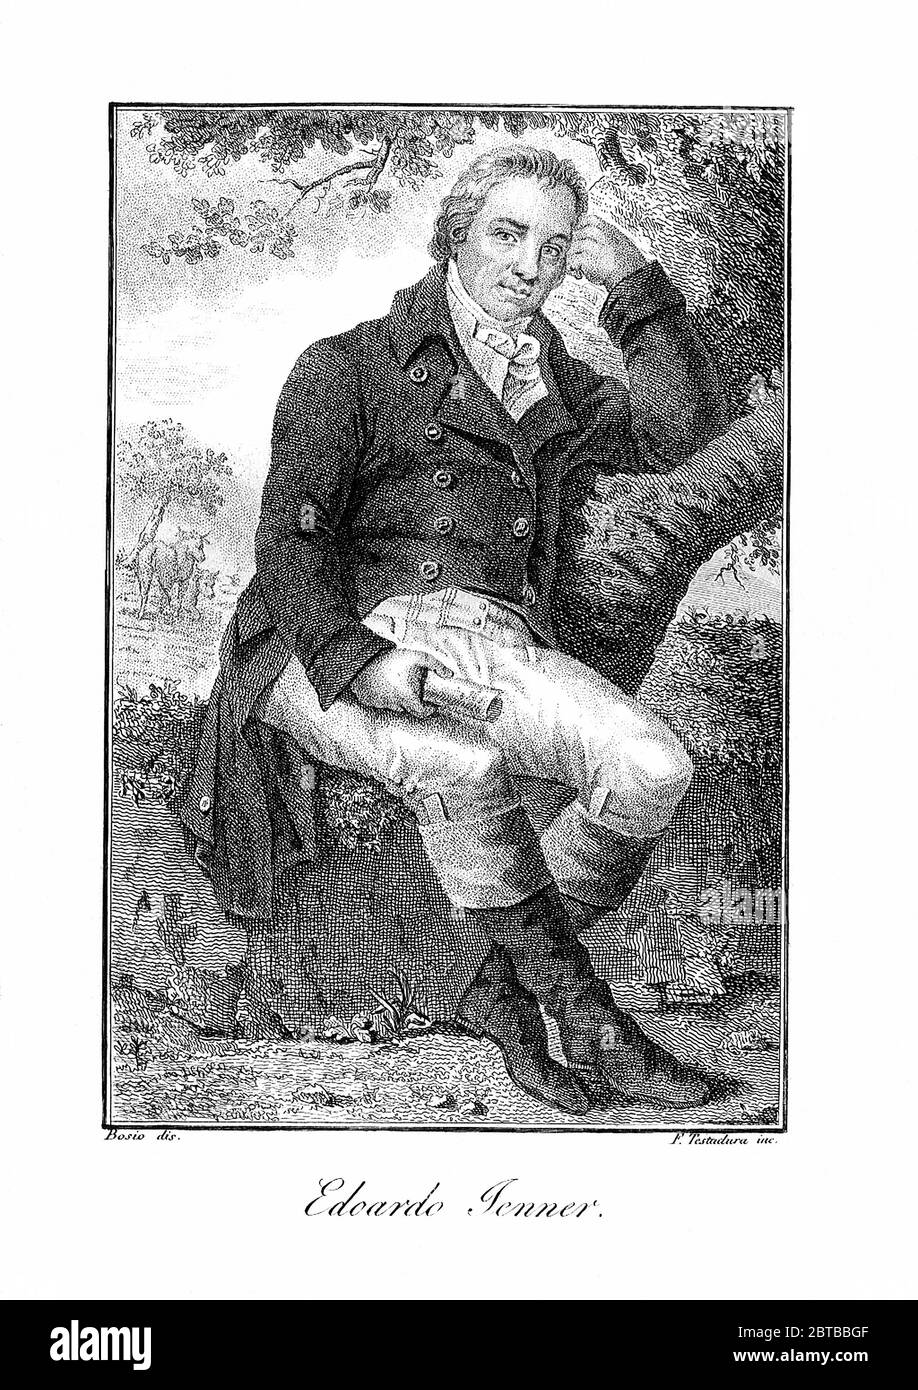 1820 ca., GROSSBRITANNIEN: Der britische Arzt, Virologe und Naturforscher EDWARD JENNER ( 1749 - 1823 ), der an der Entwicklung des POCKENIMPFES mitwirkte. Porträt von Bosio , gestochen von F. Testatura , Italien . - IMPFUNG - VIRUS - VIROLOGO - VIROLOGE - ANTIVAIOLOSA - ANTIVAIOLO - ANTI-VAIOLO - ANTIVAIOLO - VACCINAZIONE - foto storiche - scienziato - Wissenschaftler - Portrait - ritratto - GRAND BRETAGNA - DOTTORE - MEDICO - MEDICINA - Medizin - SCIENTIZA - WISSENSCHAFT - illustrazione - Illustration --- Archivio GBB Stockfoto